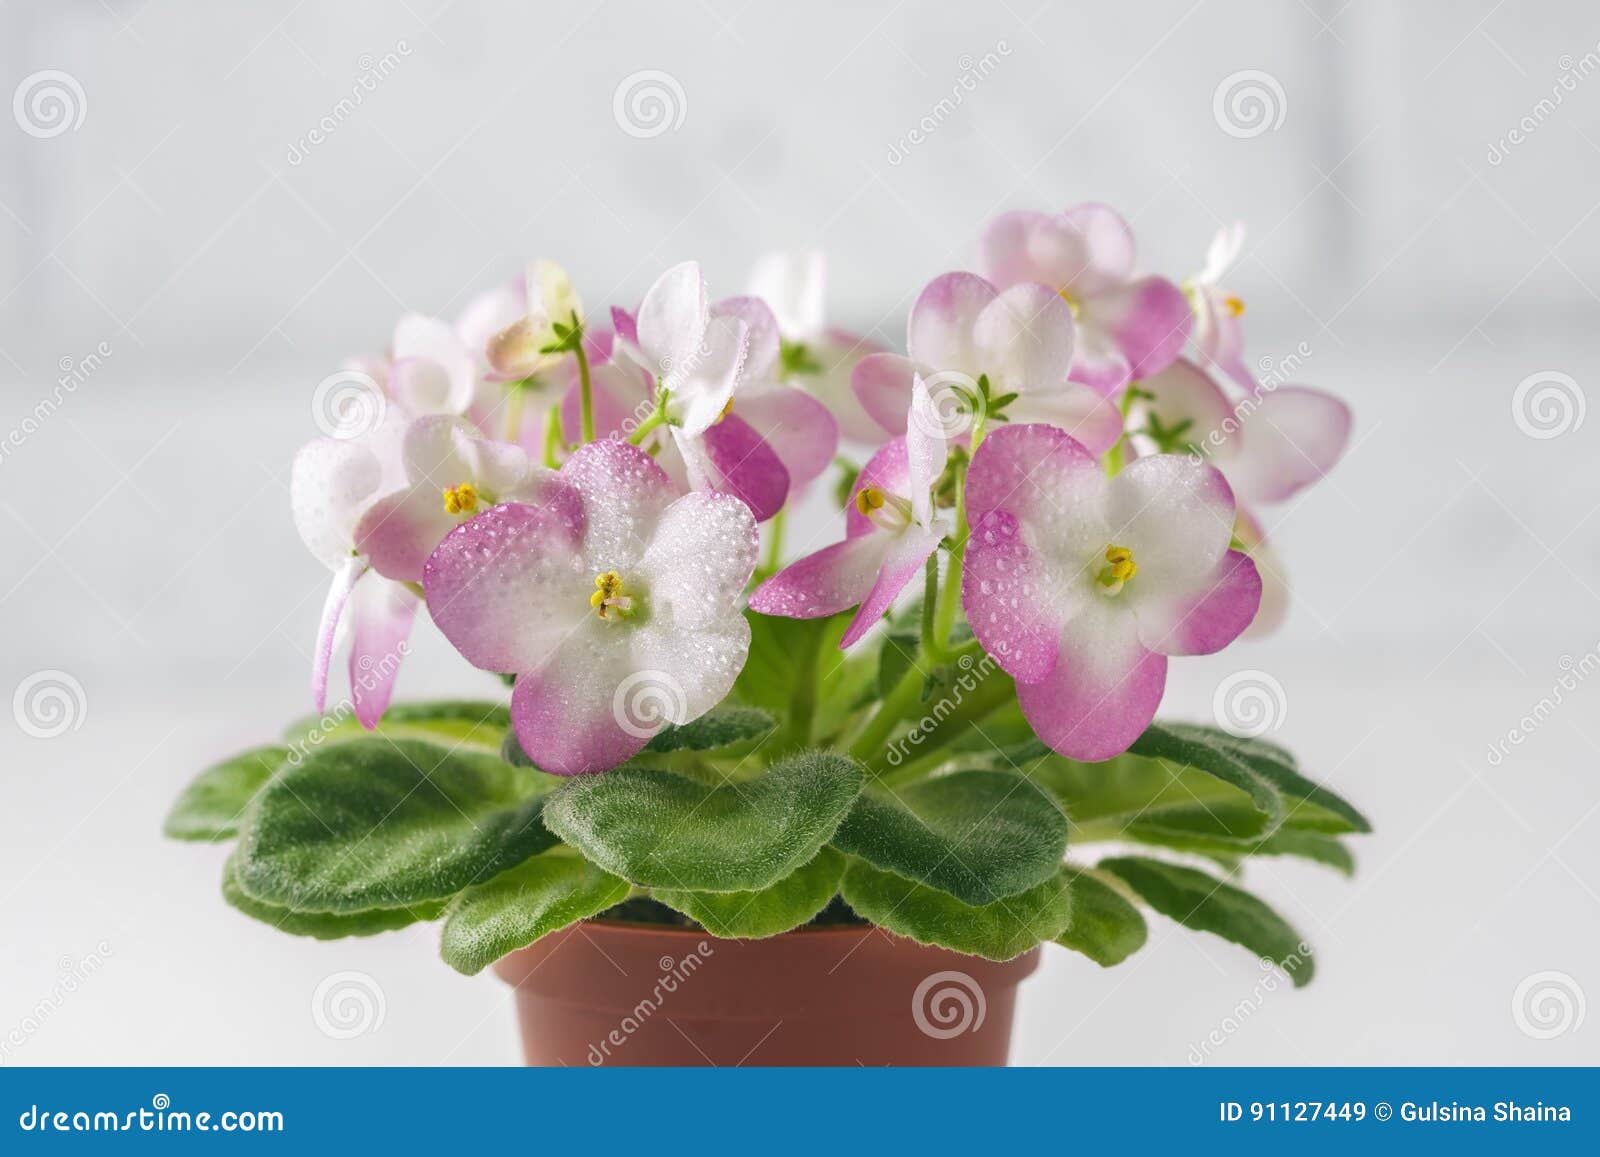 Violette Africaine De Rose Et Blanche Dans Le Pot De Fleur, Sur Le Blanc  Image stock - Image du blanc, fond: 91127449